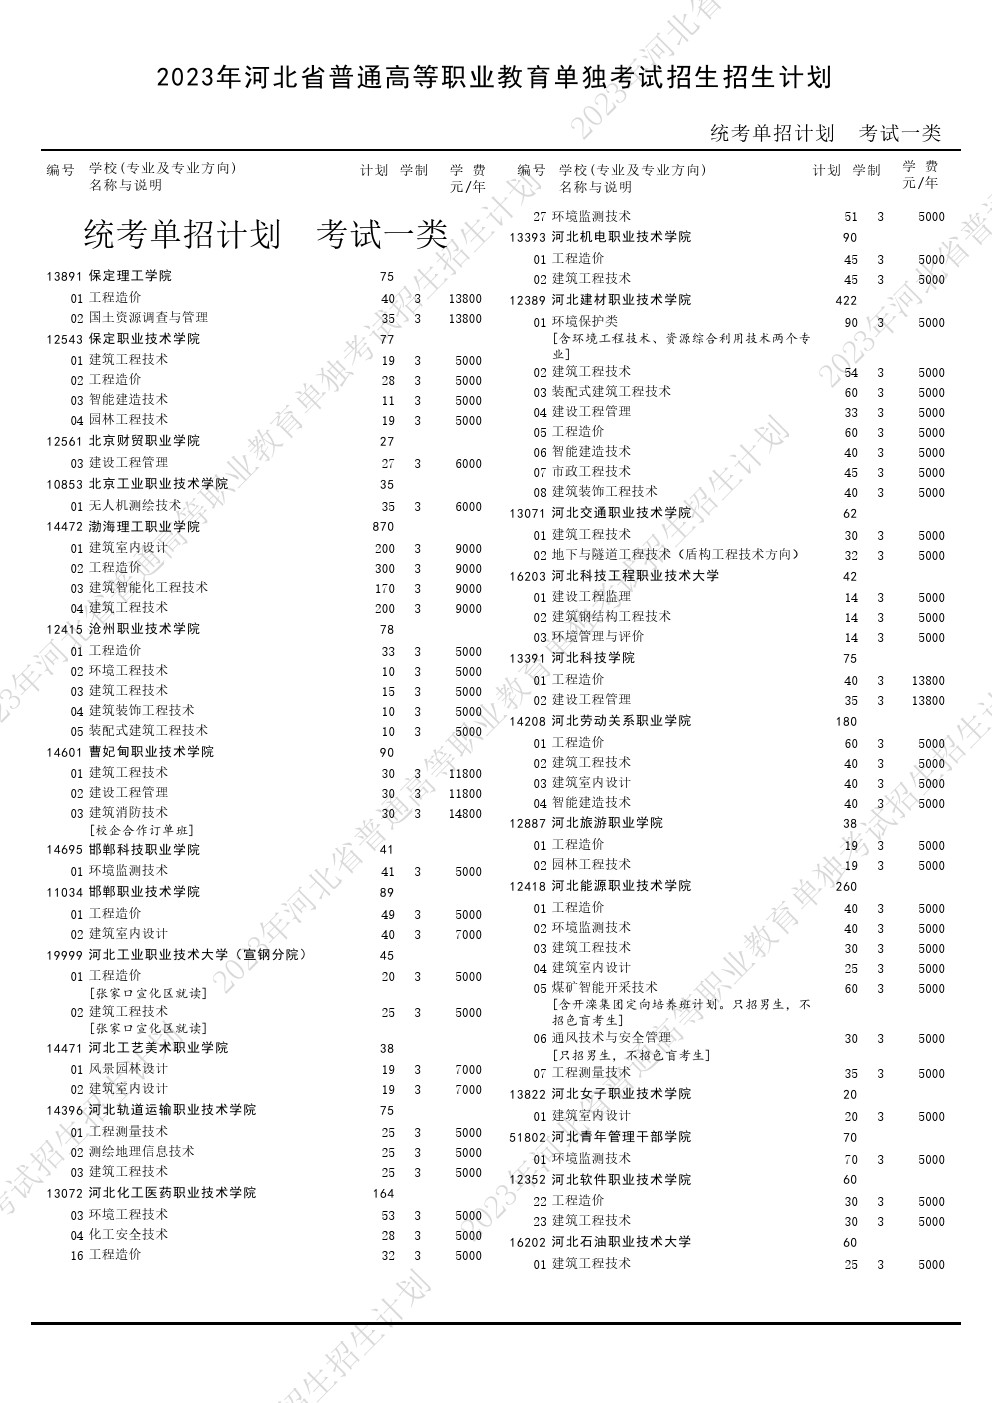 2023年河北省高职单招考试一类招生计划